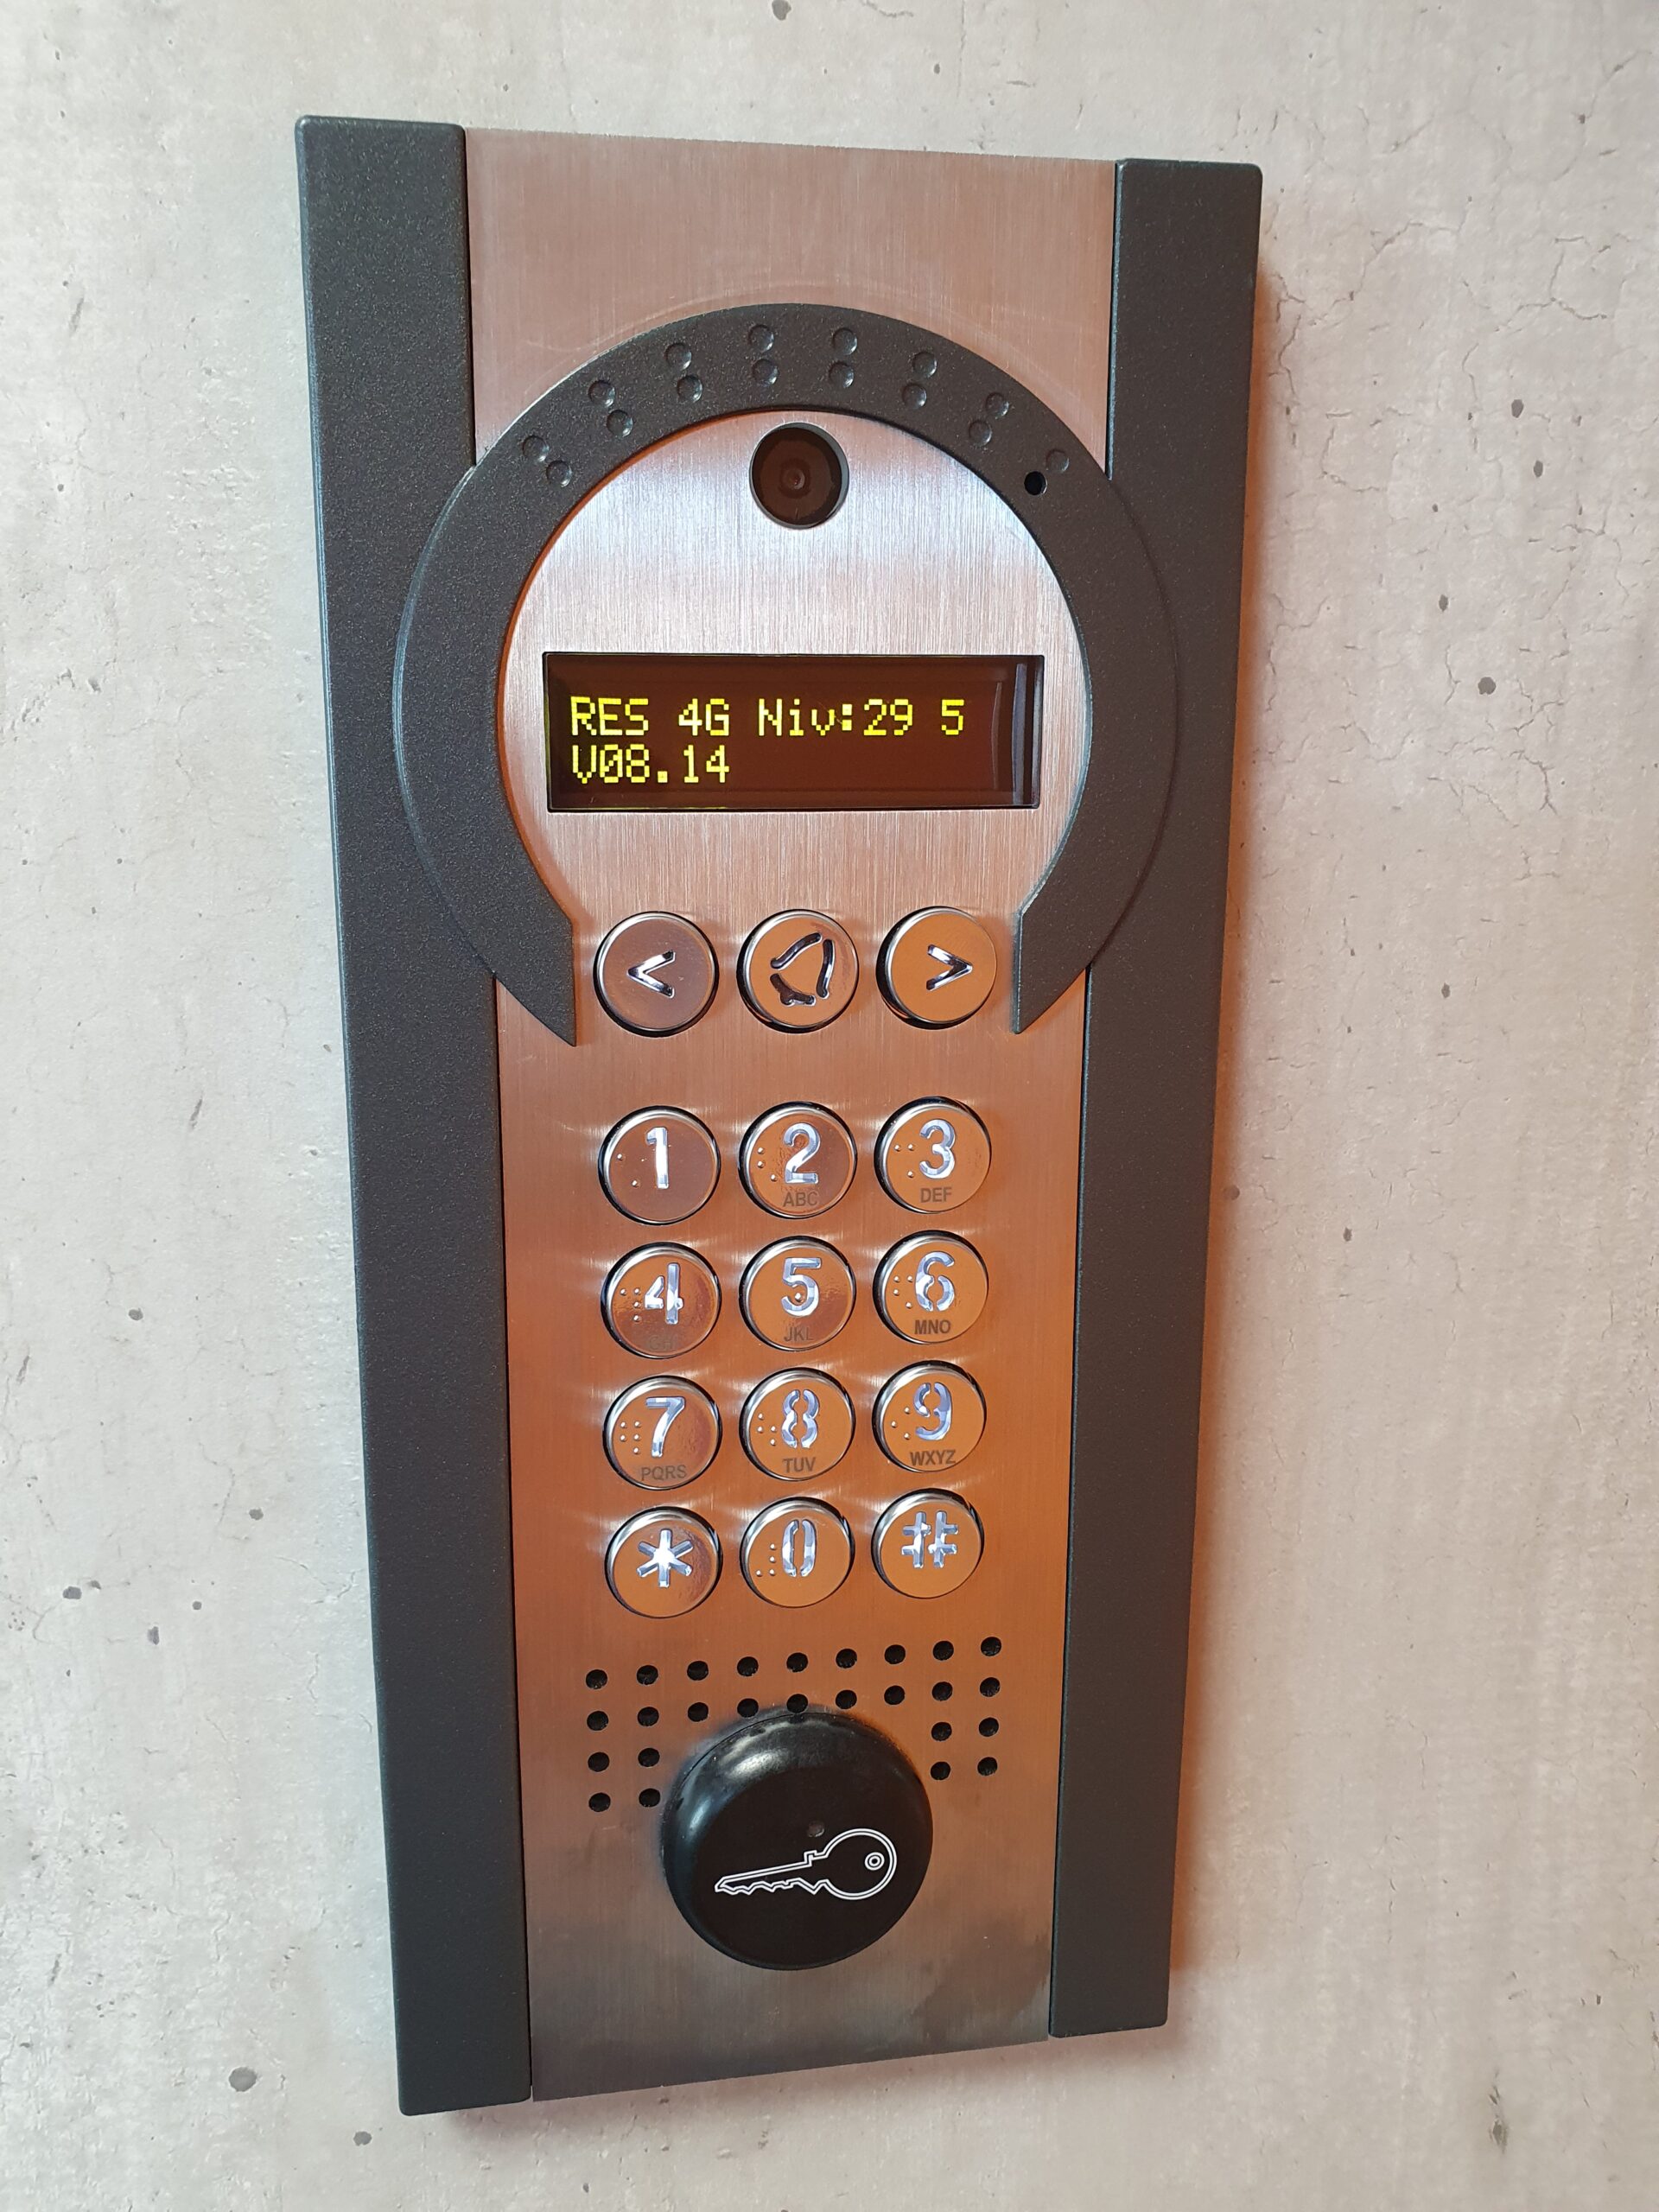 Un interphone connecté pour un accès autonome dans un appartement